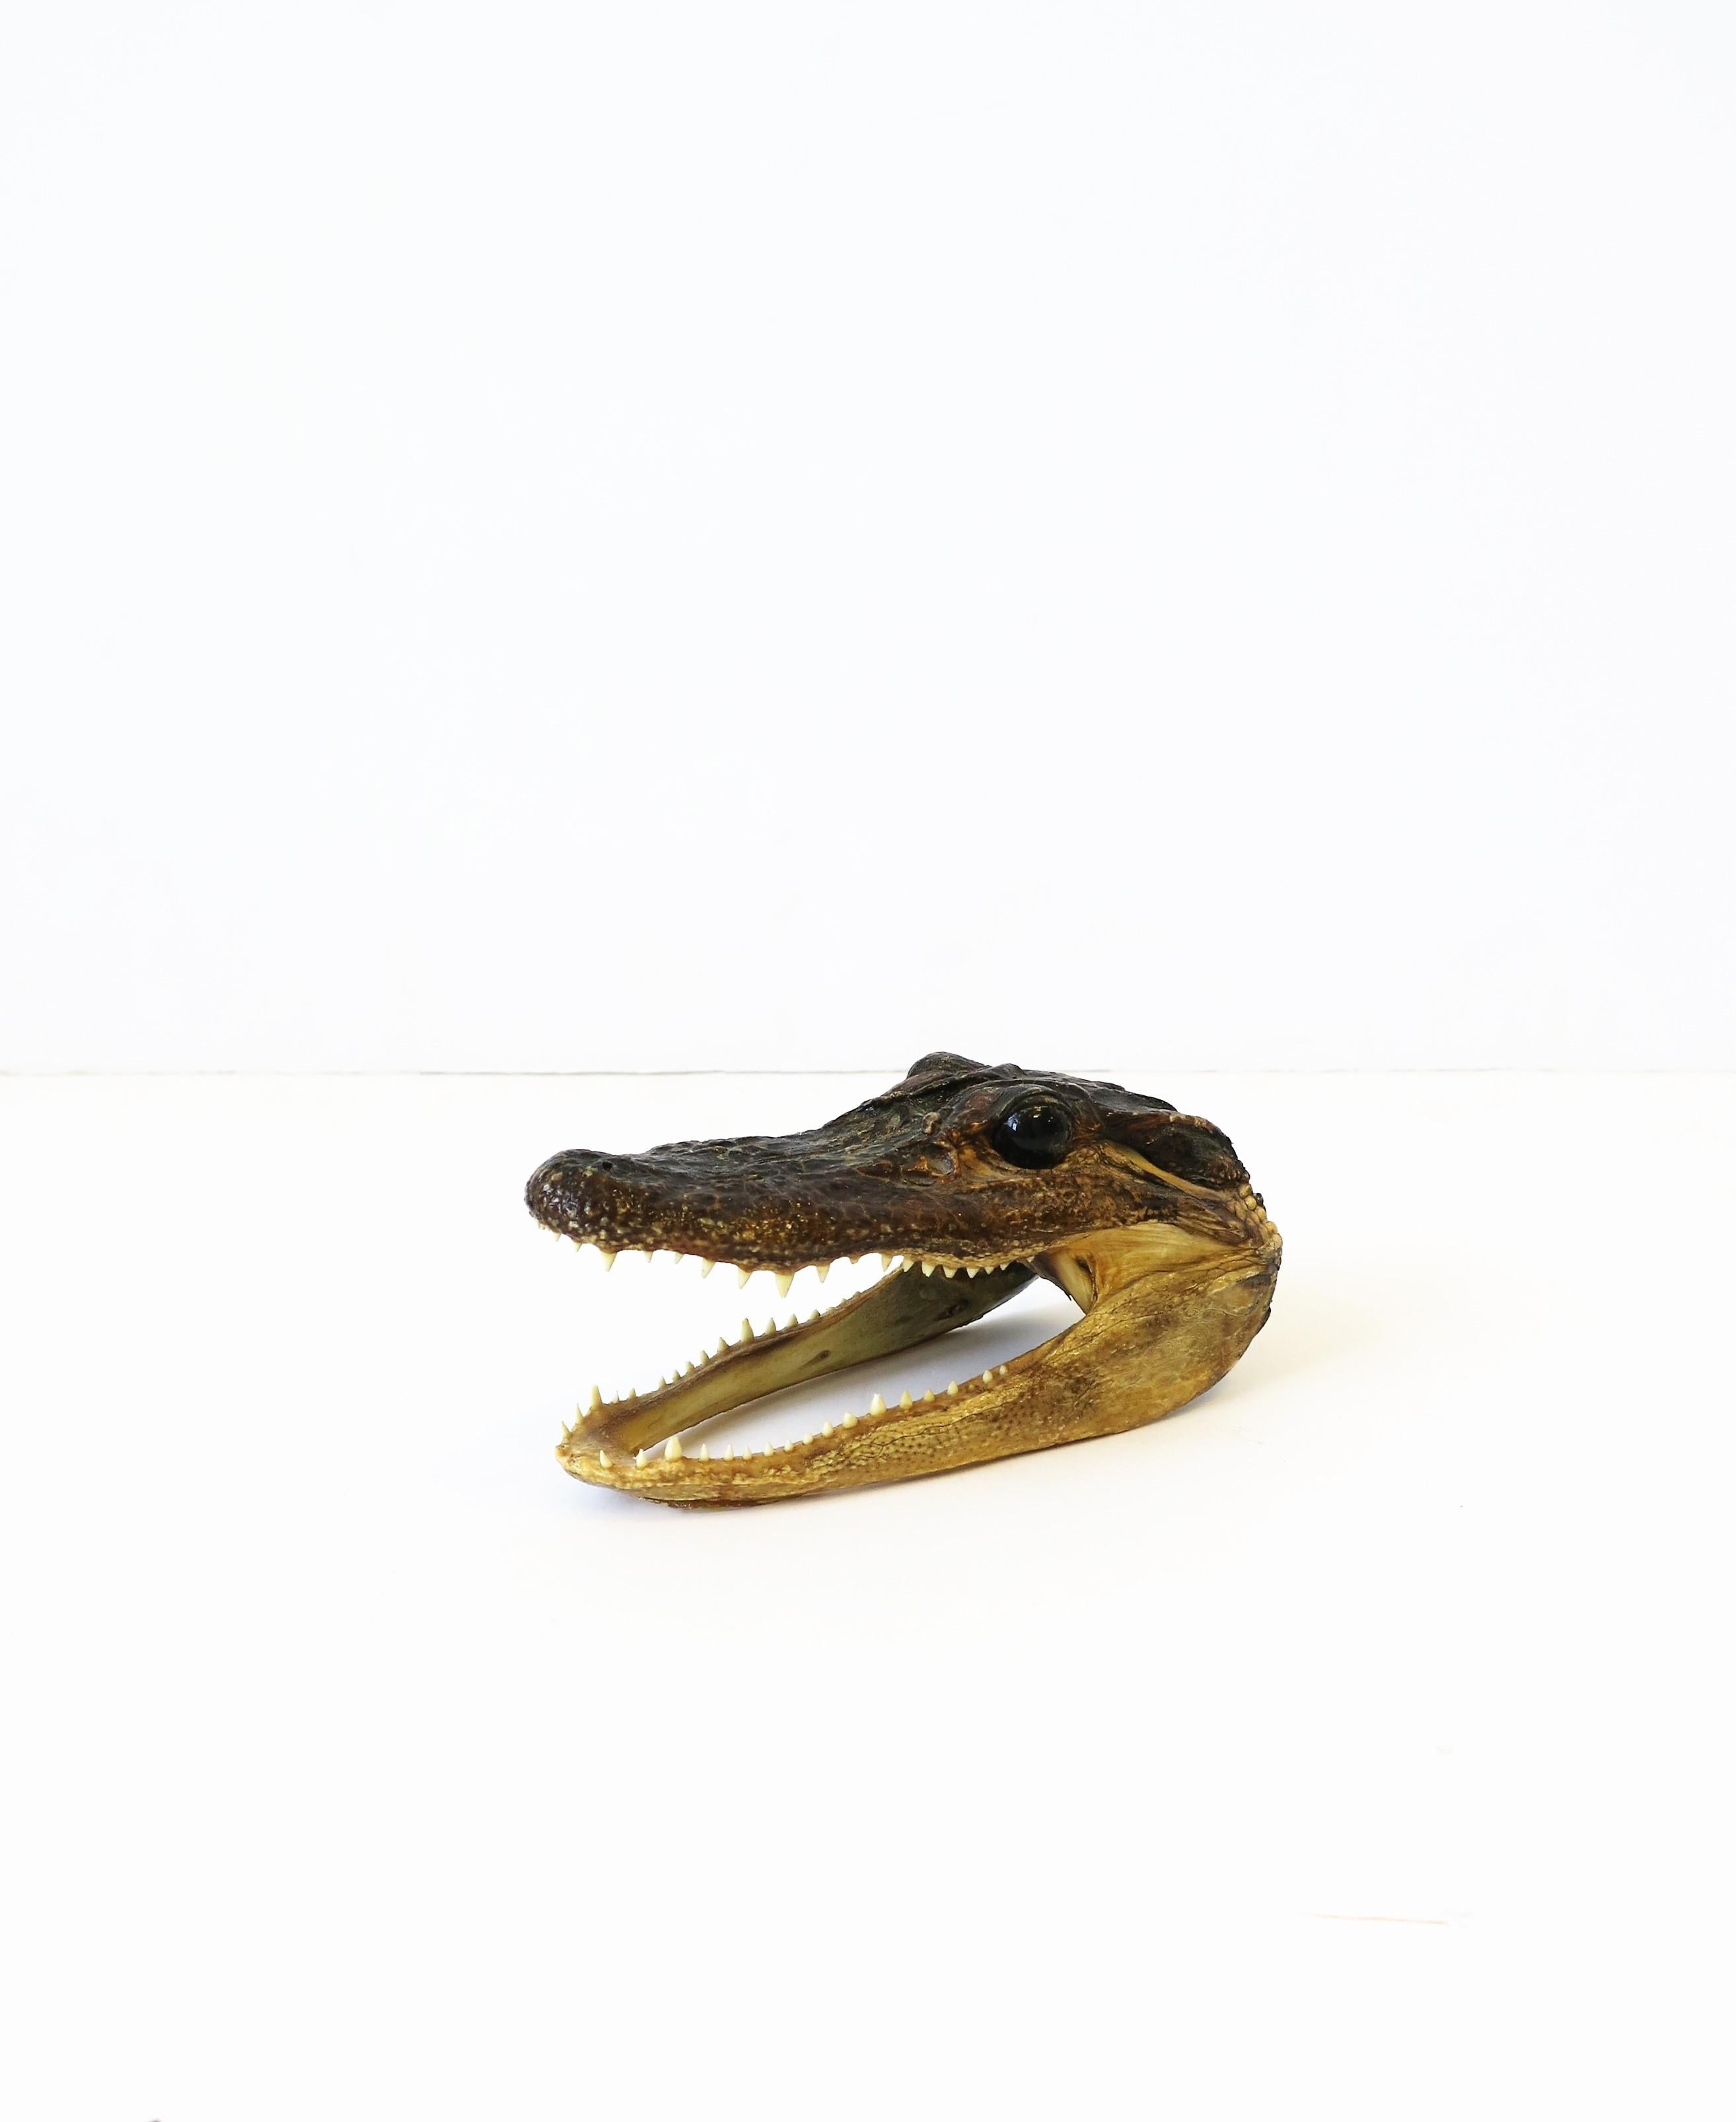 Victorian Taxidermy Alligator Reptile Decorative Object Sculpture